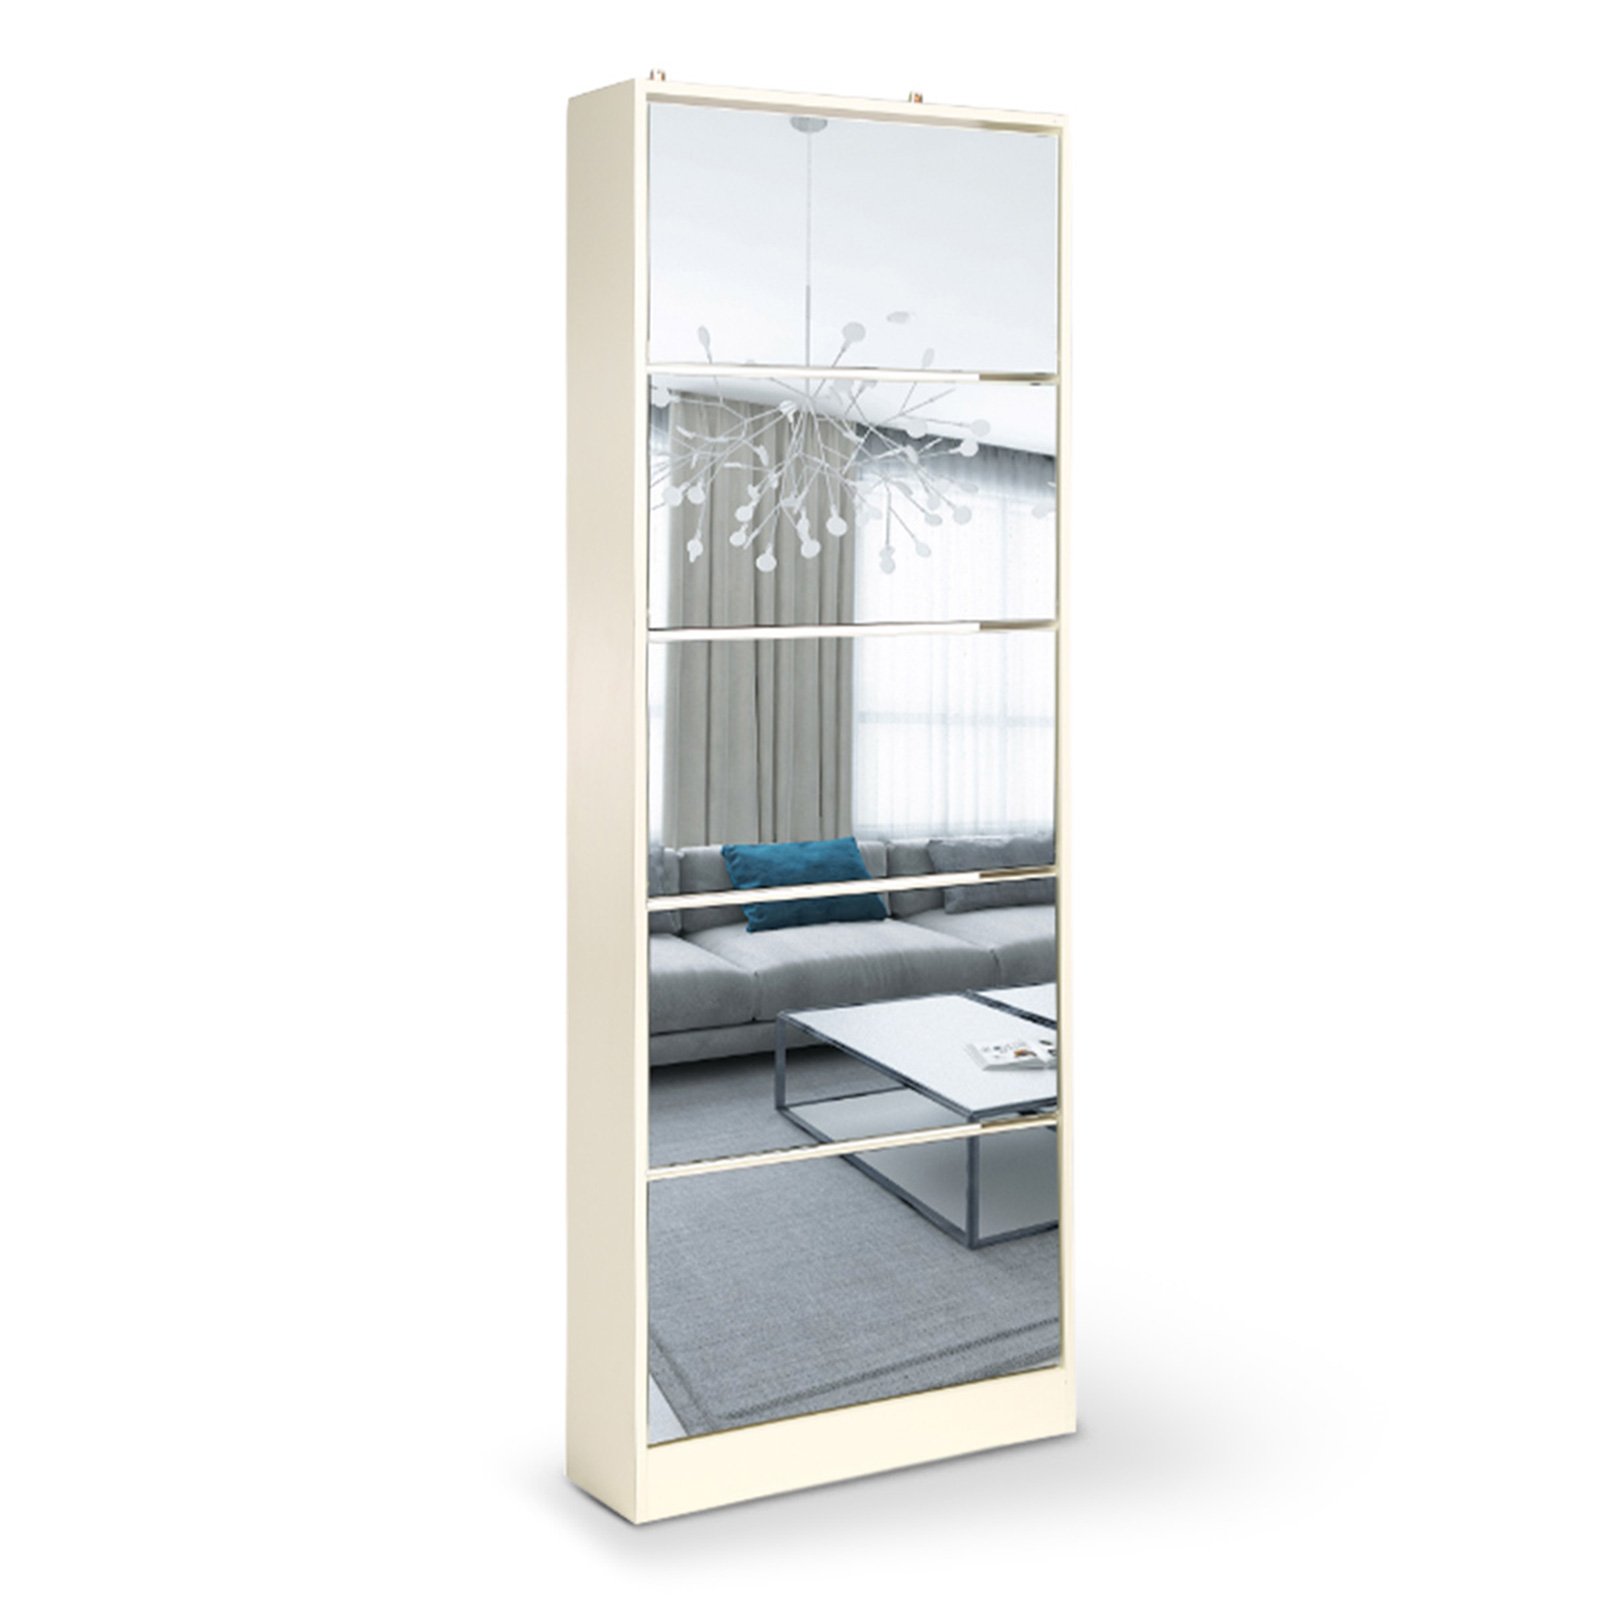 Mirrored Shoe Storage Cabinet Organizer - 63 x 17 x 170cm 1